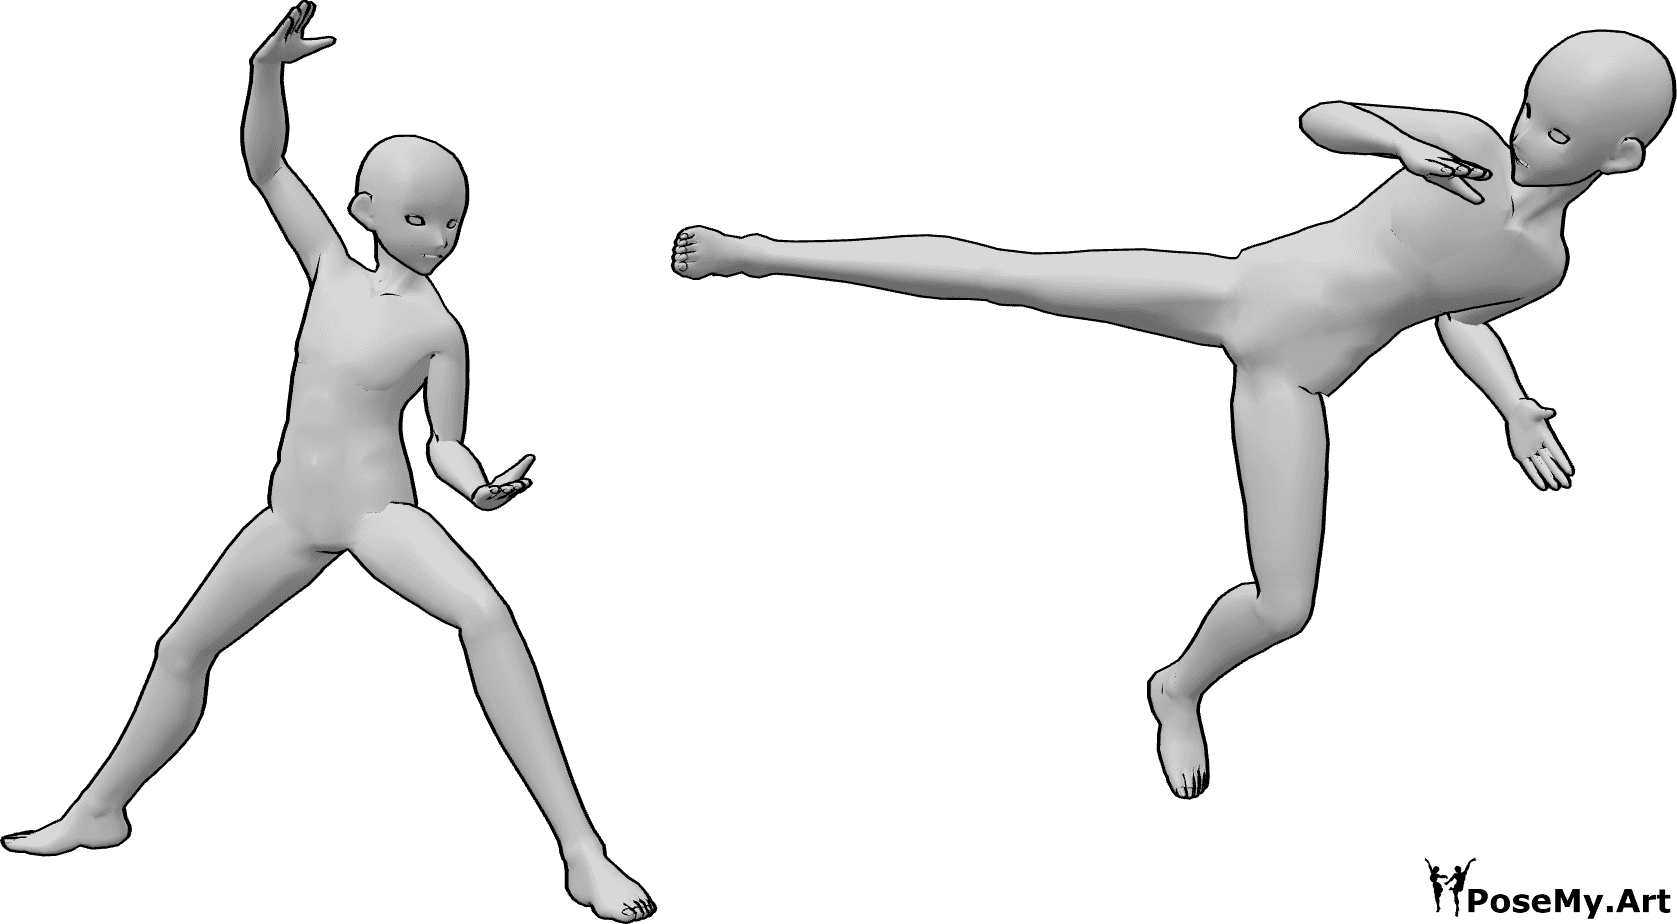 Referencia de poses- Postura de lucha ninja anime - Dos hombres anime están luchando, uno de ellos está haciendo un compañero, anime ninja lucha pose